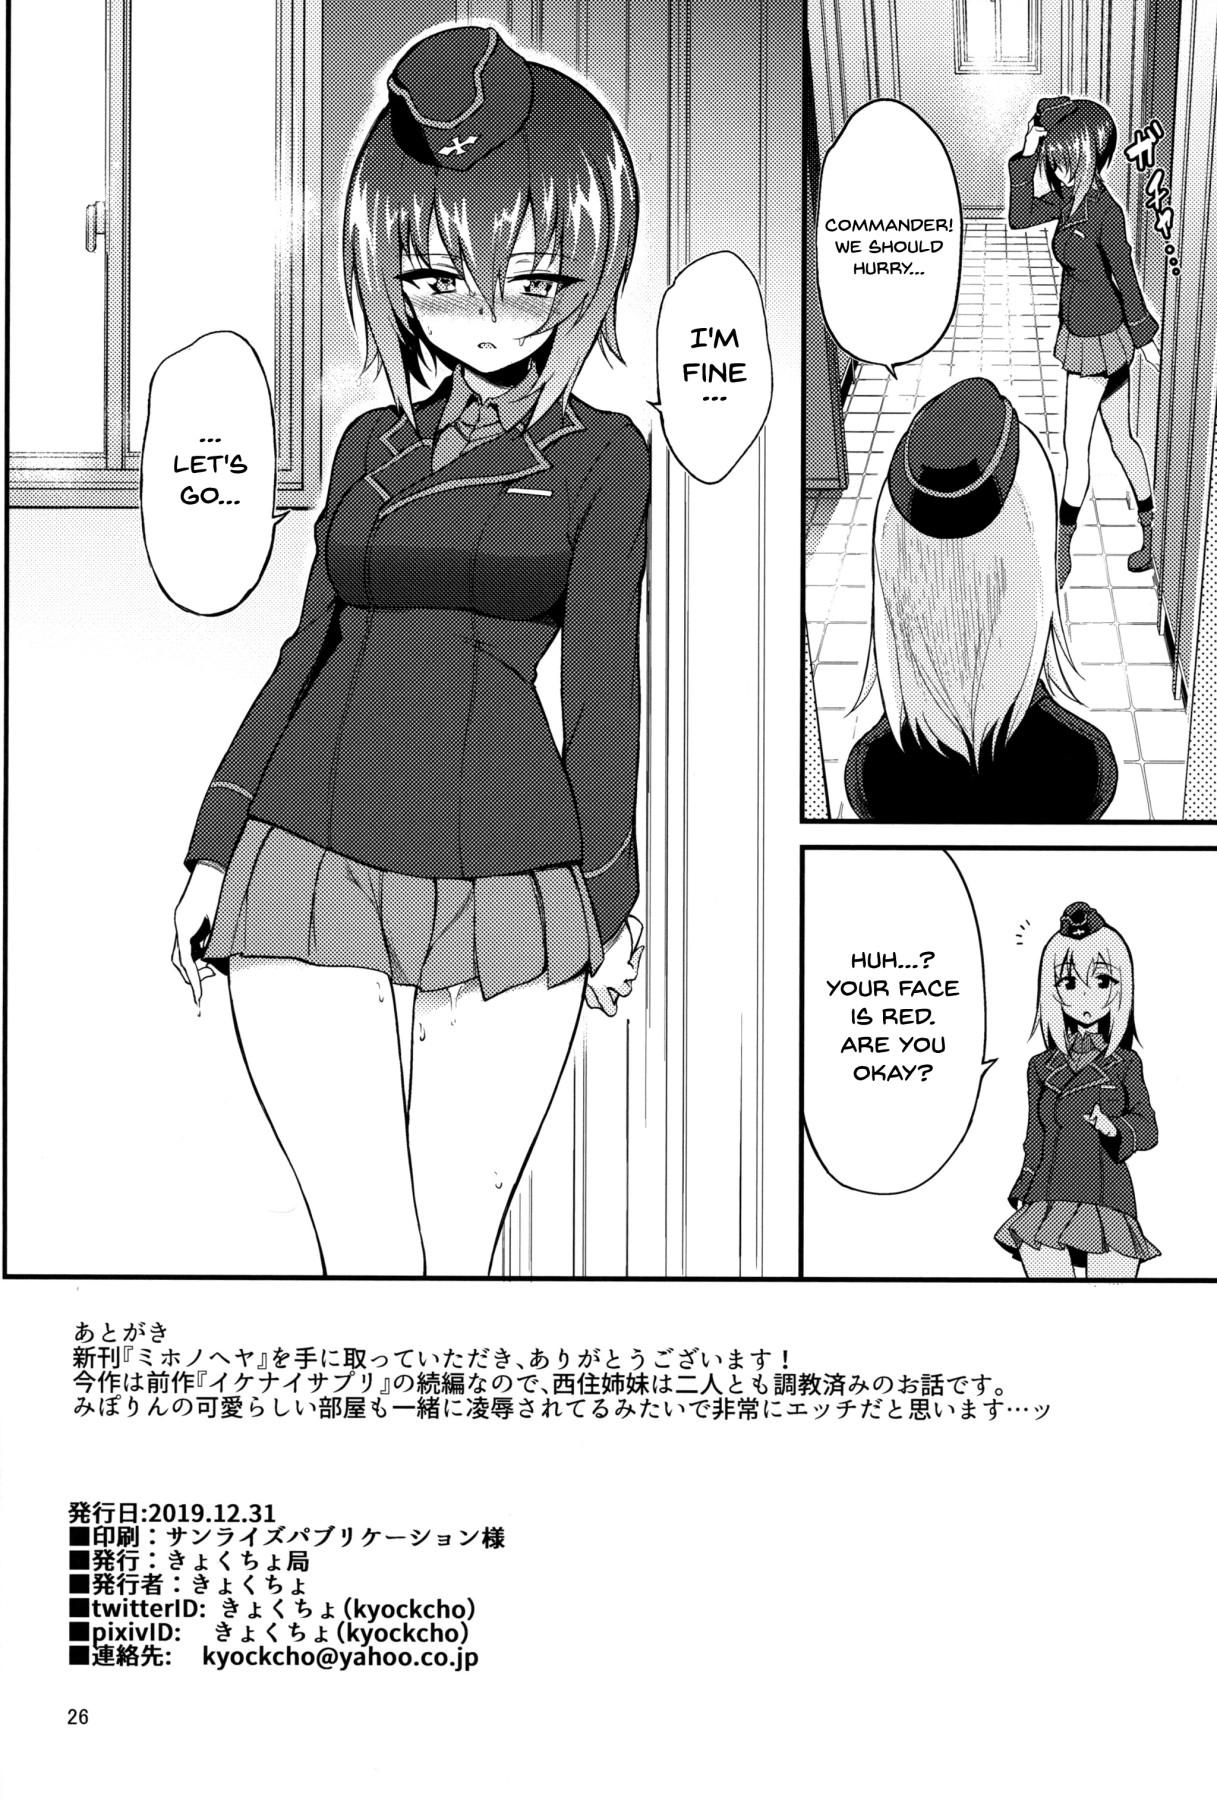 Messy Miho no Heya | Miho's Room - Girls und panzer Str8 - Page 25